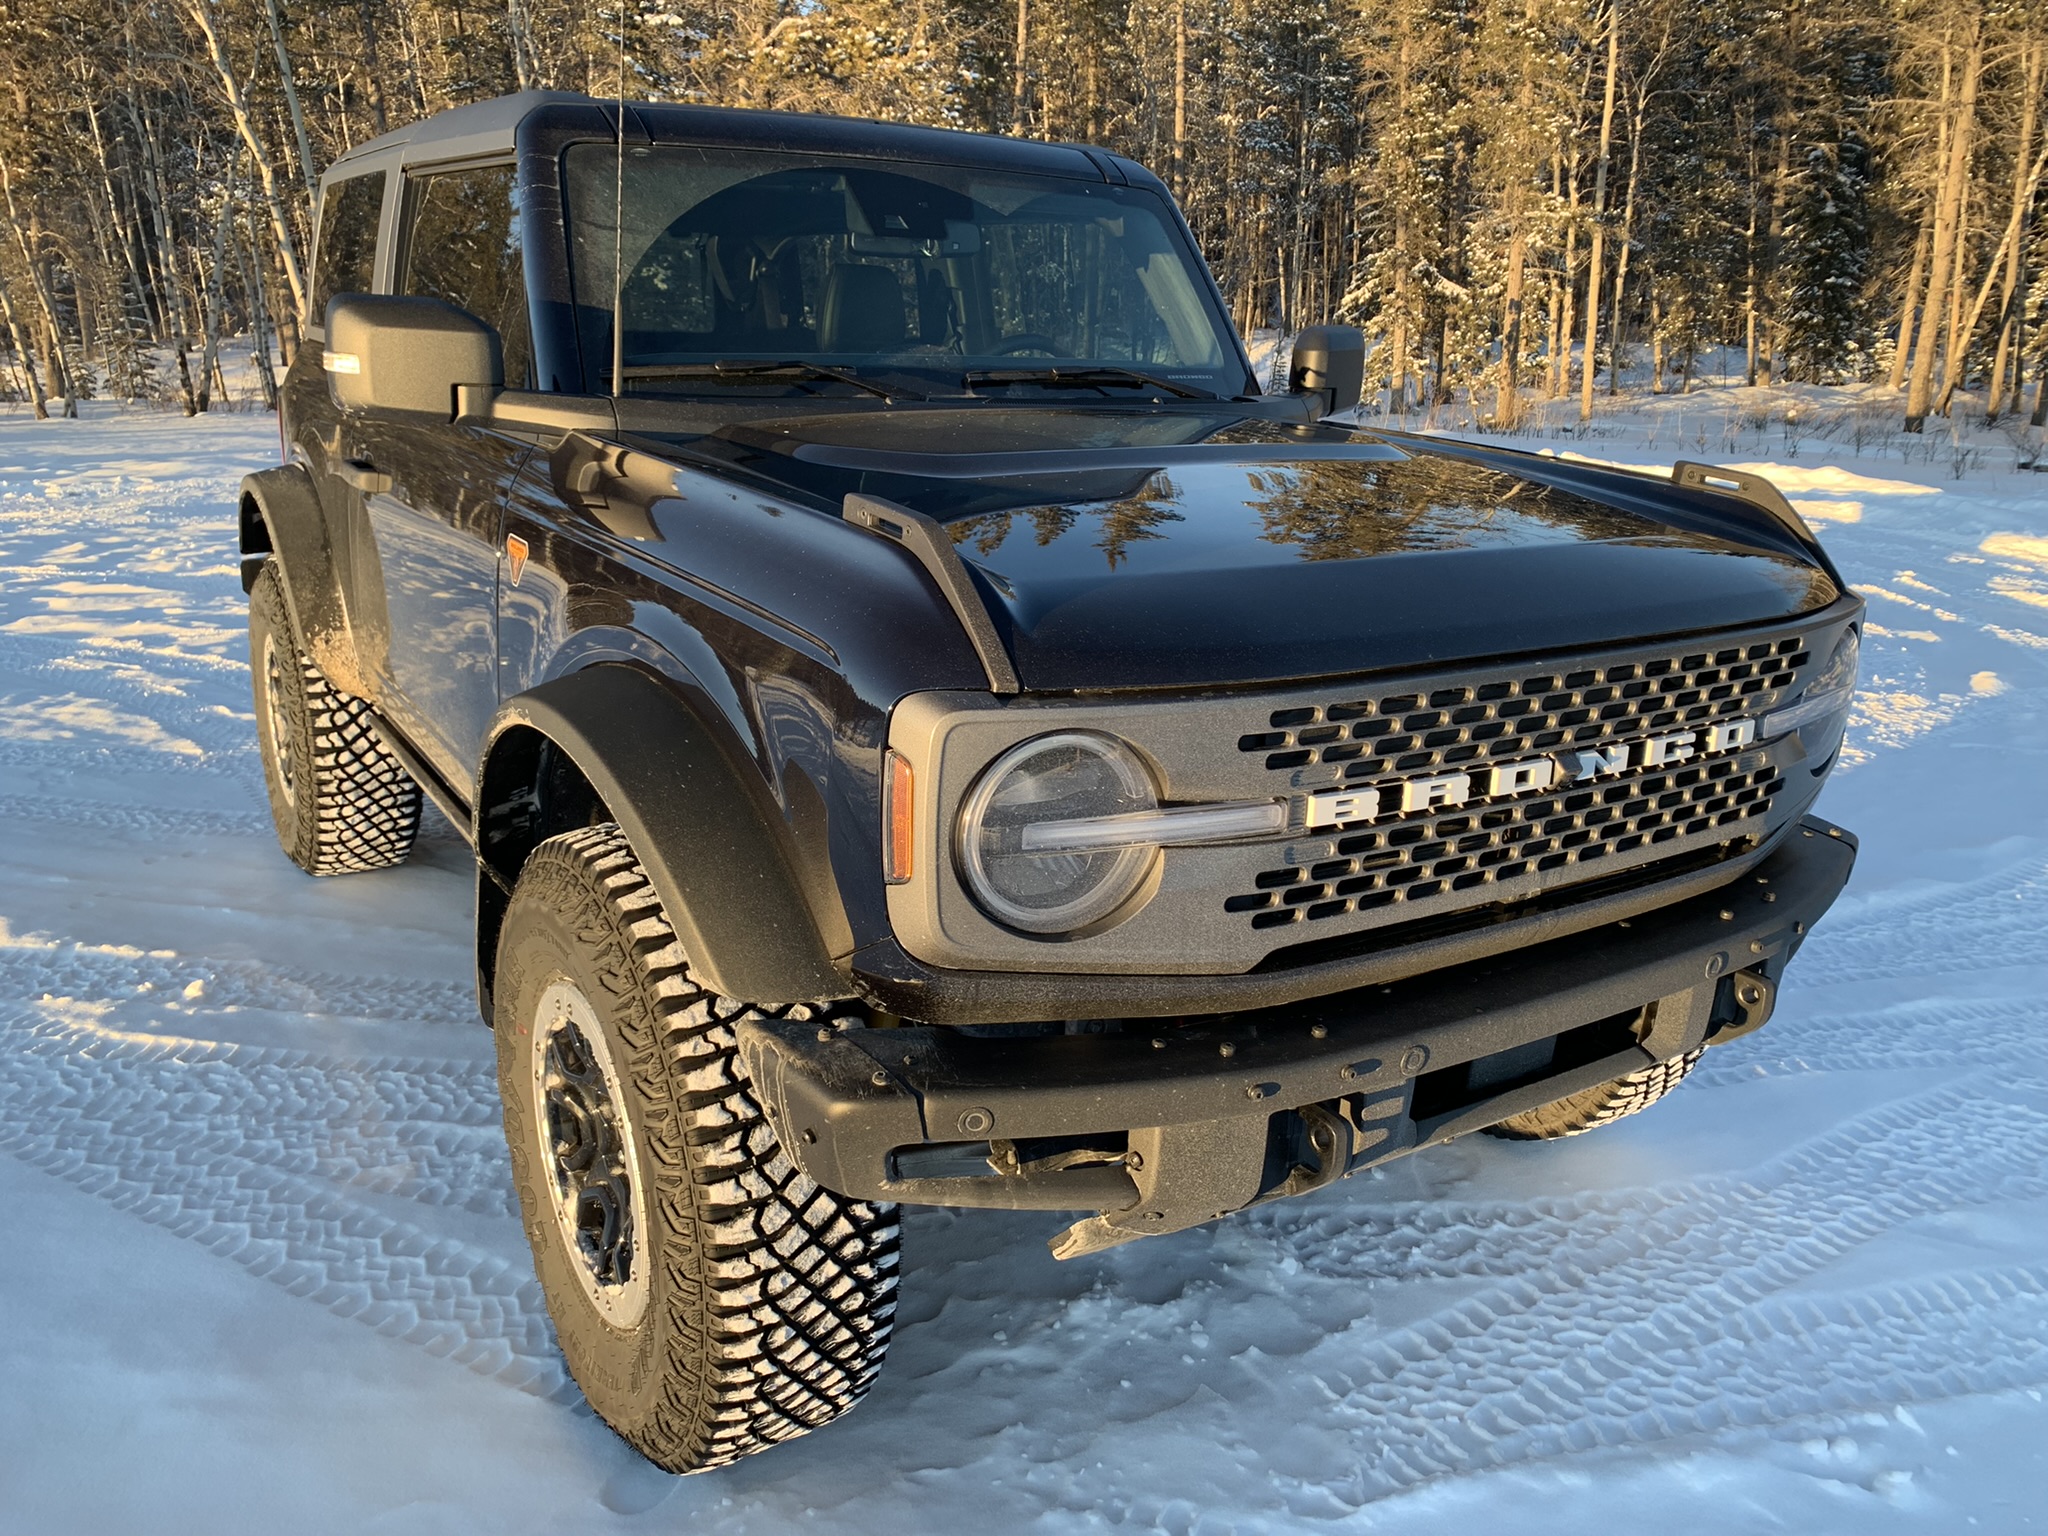 Ford Bronco Snow Pictures Please 0E711986-4E08-41DC-A17C-68B6290D5C75